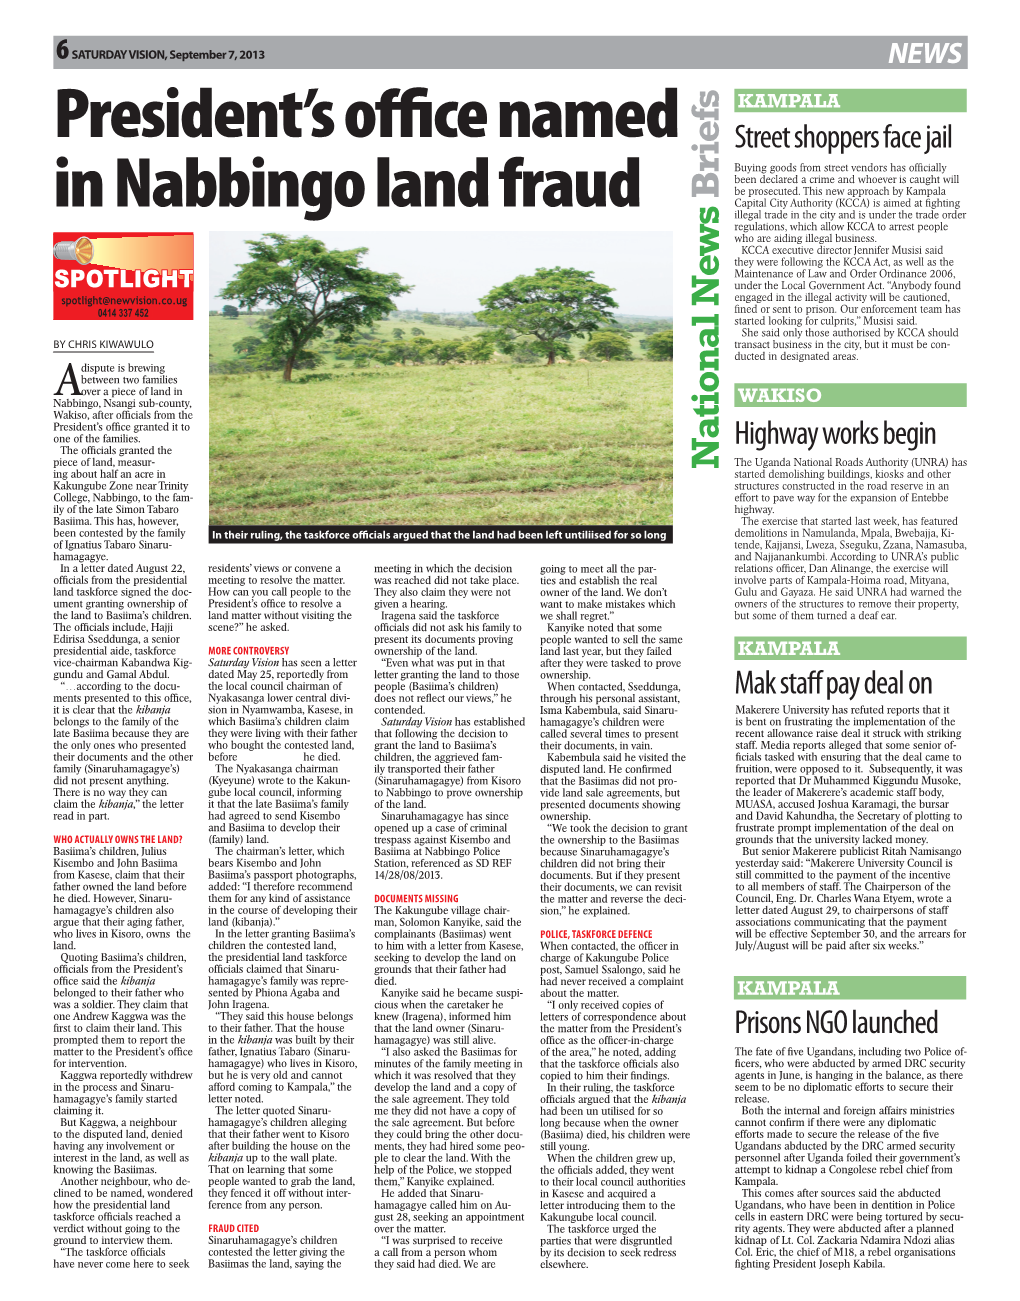 President's Office Named in Nabbingo Land Fraud